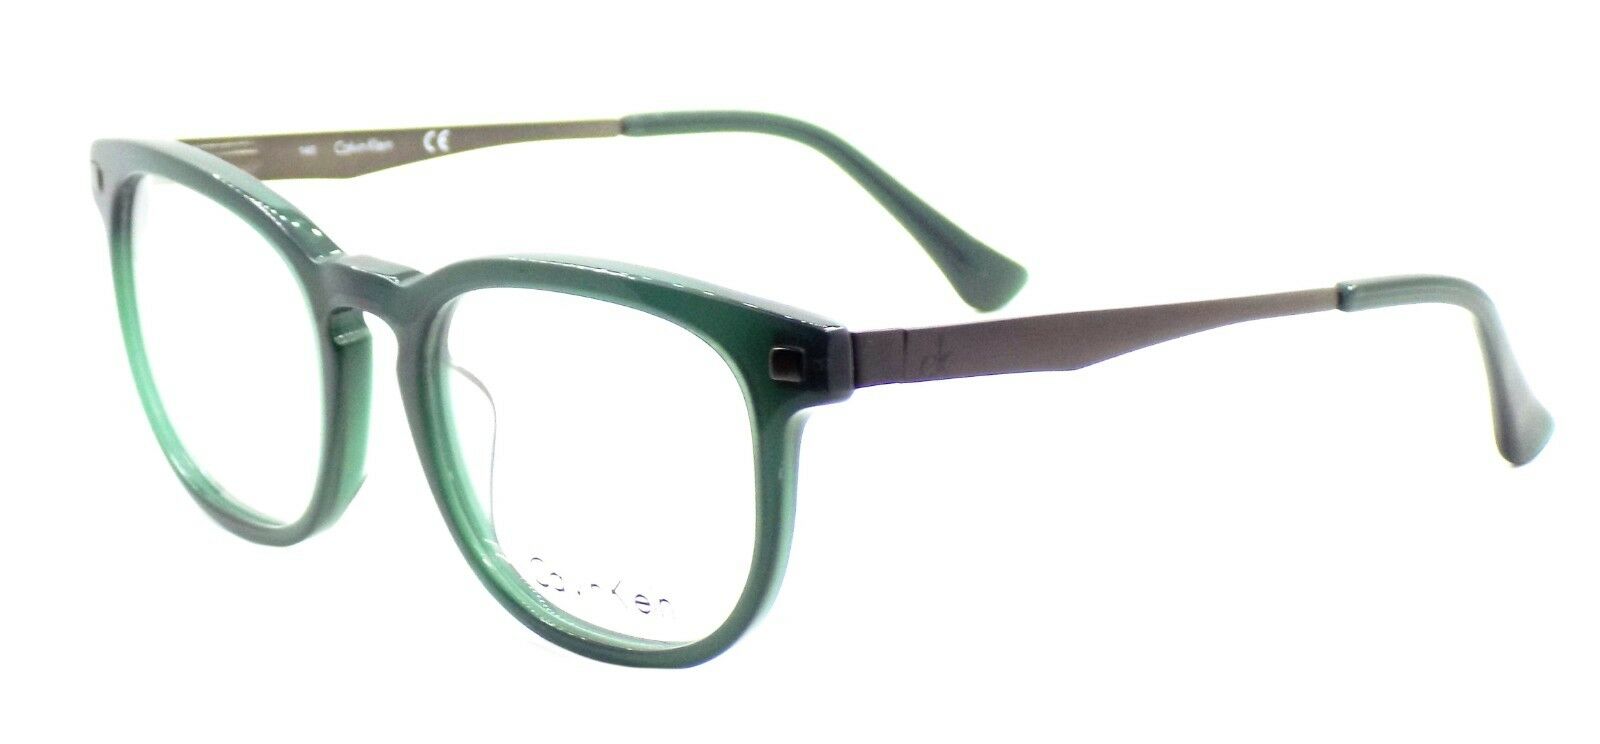 1-Calvin Klein CK5940 318 Unisex Eyeglasses Frames Olive 50-19-140 + CASE-750779100974-IKSpecs